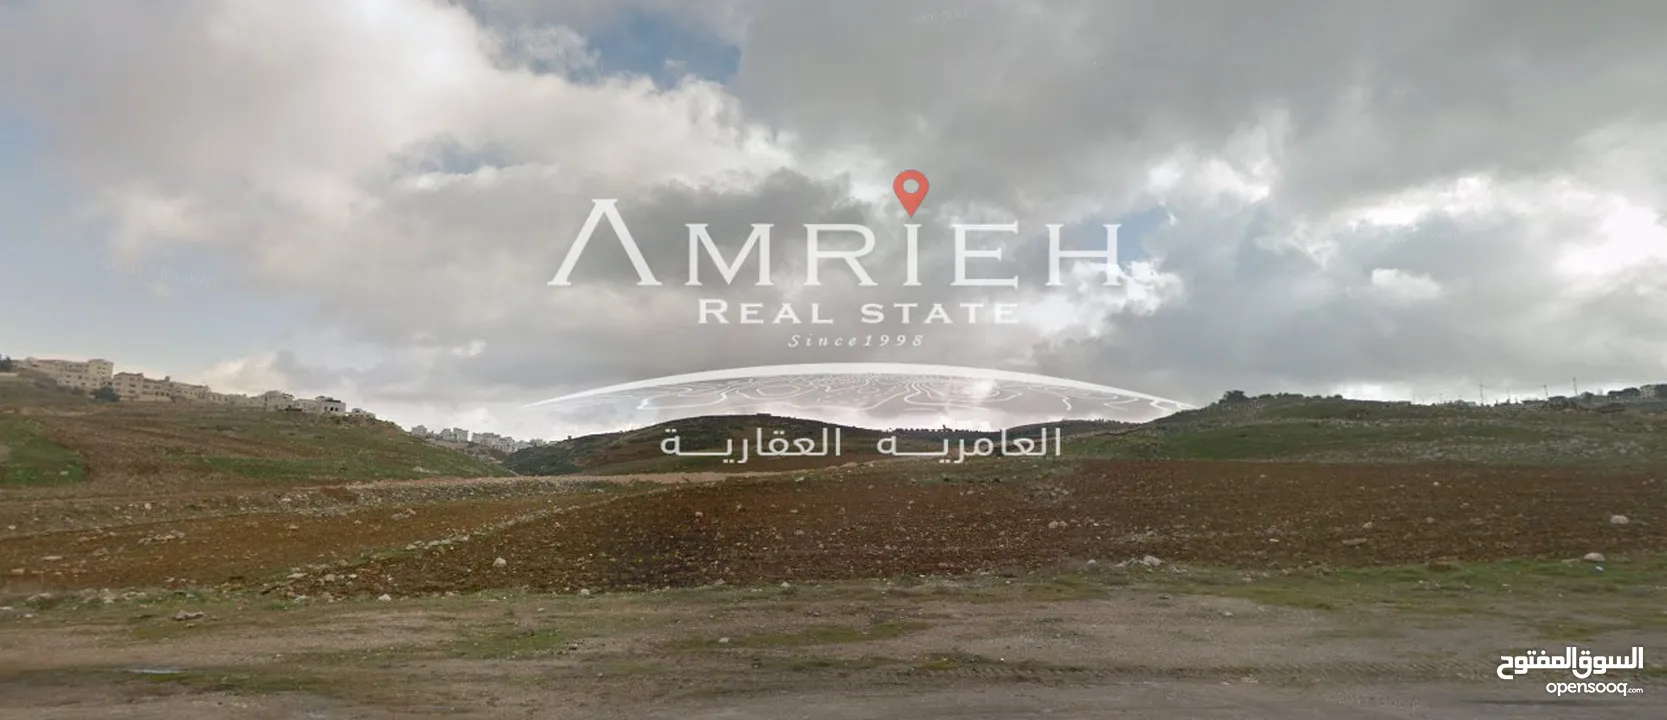 ارض 965 م للبيع في رجم عميش ( بالعالي ) / بالقرب من مسجد الفاتح ( ارض مميزه )